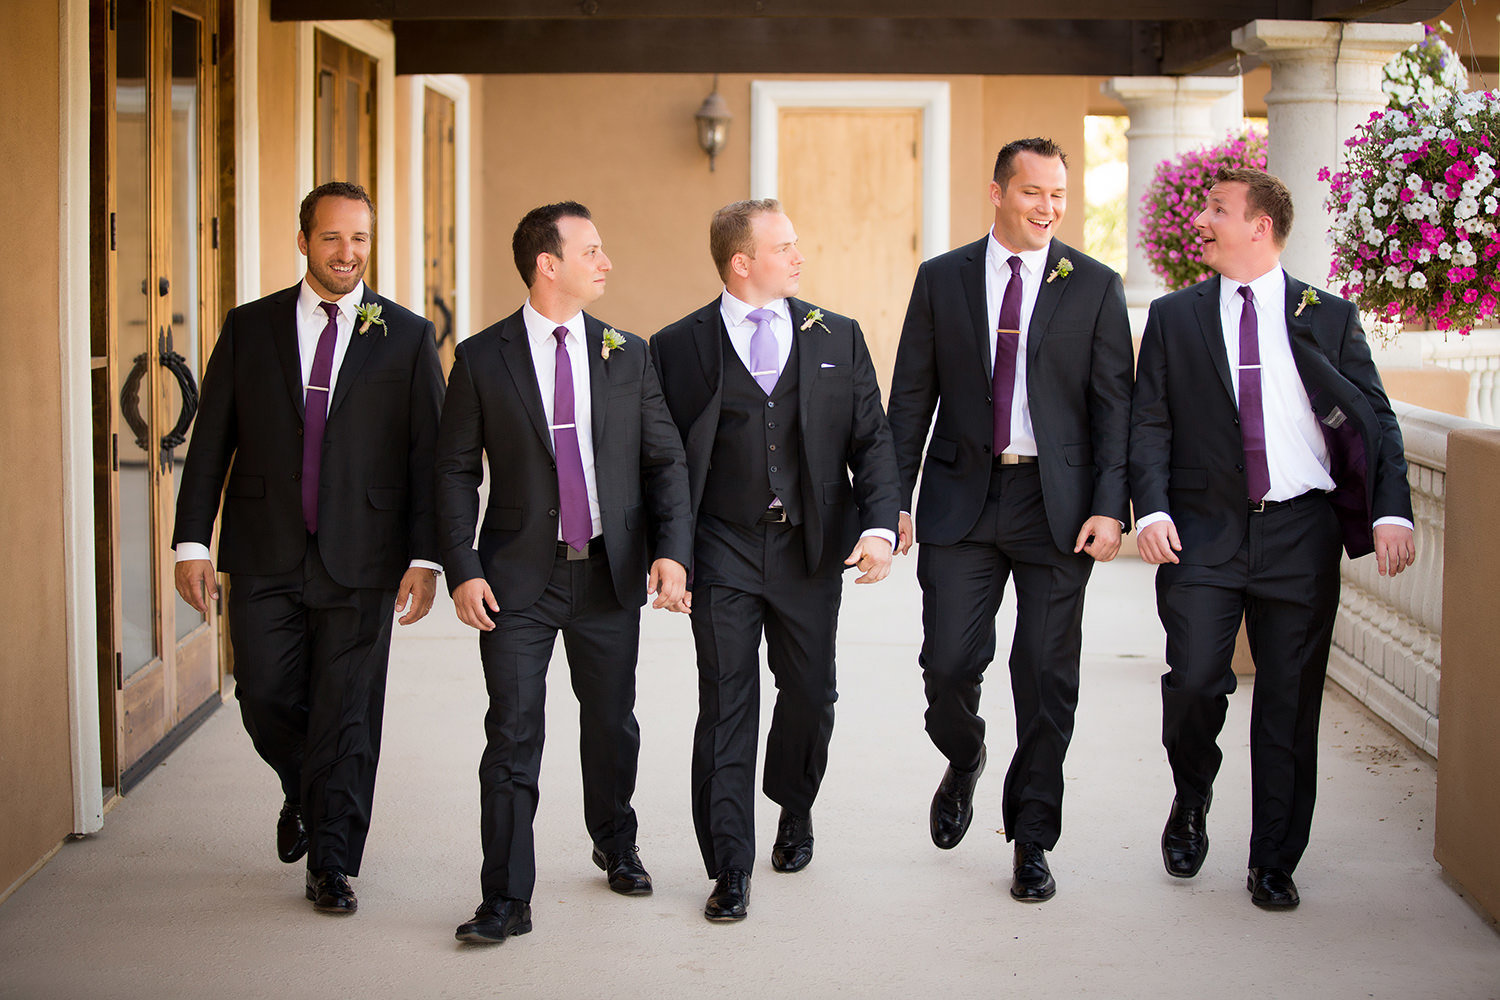 groomsmaid walking with purple ties